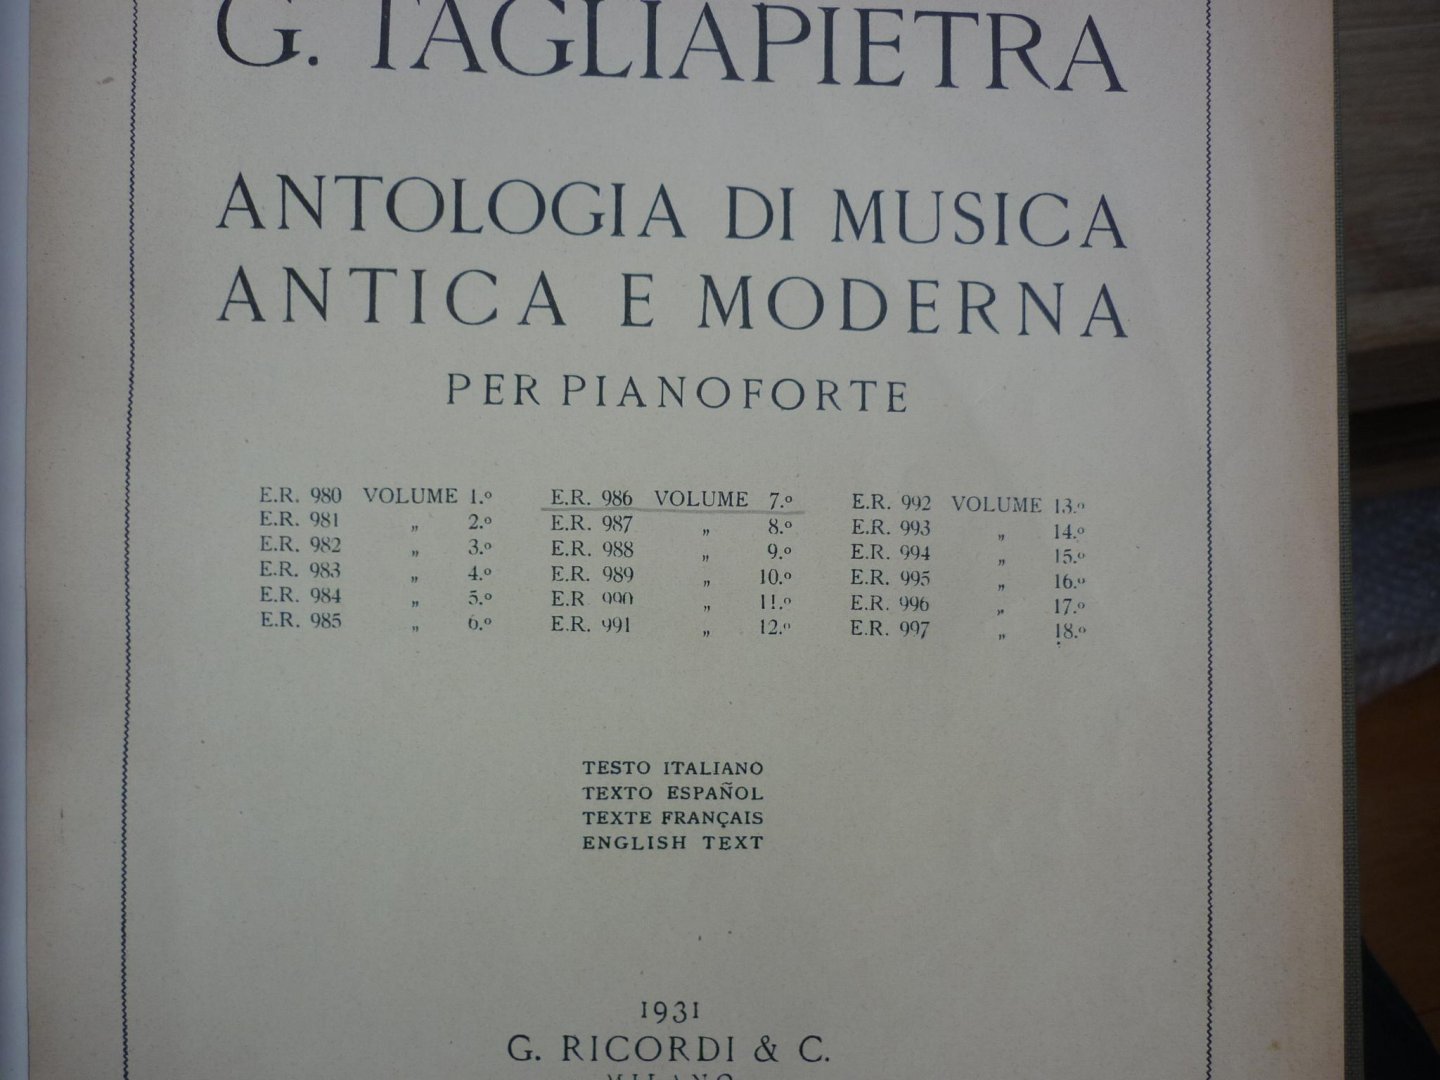 Div. Componisten (Tagliapietra; G.) - Antologia Di Musica Antica e Moderna per Pianoforte - Volume 7